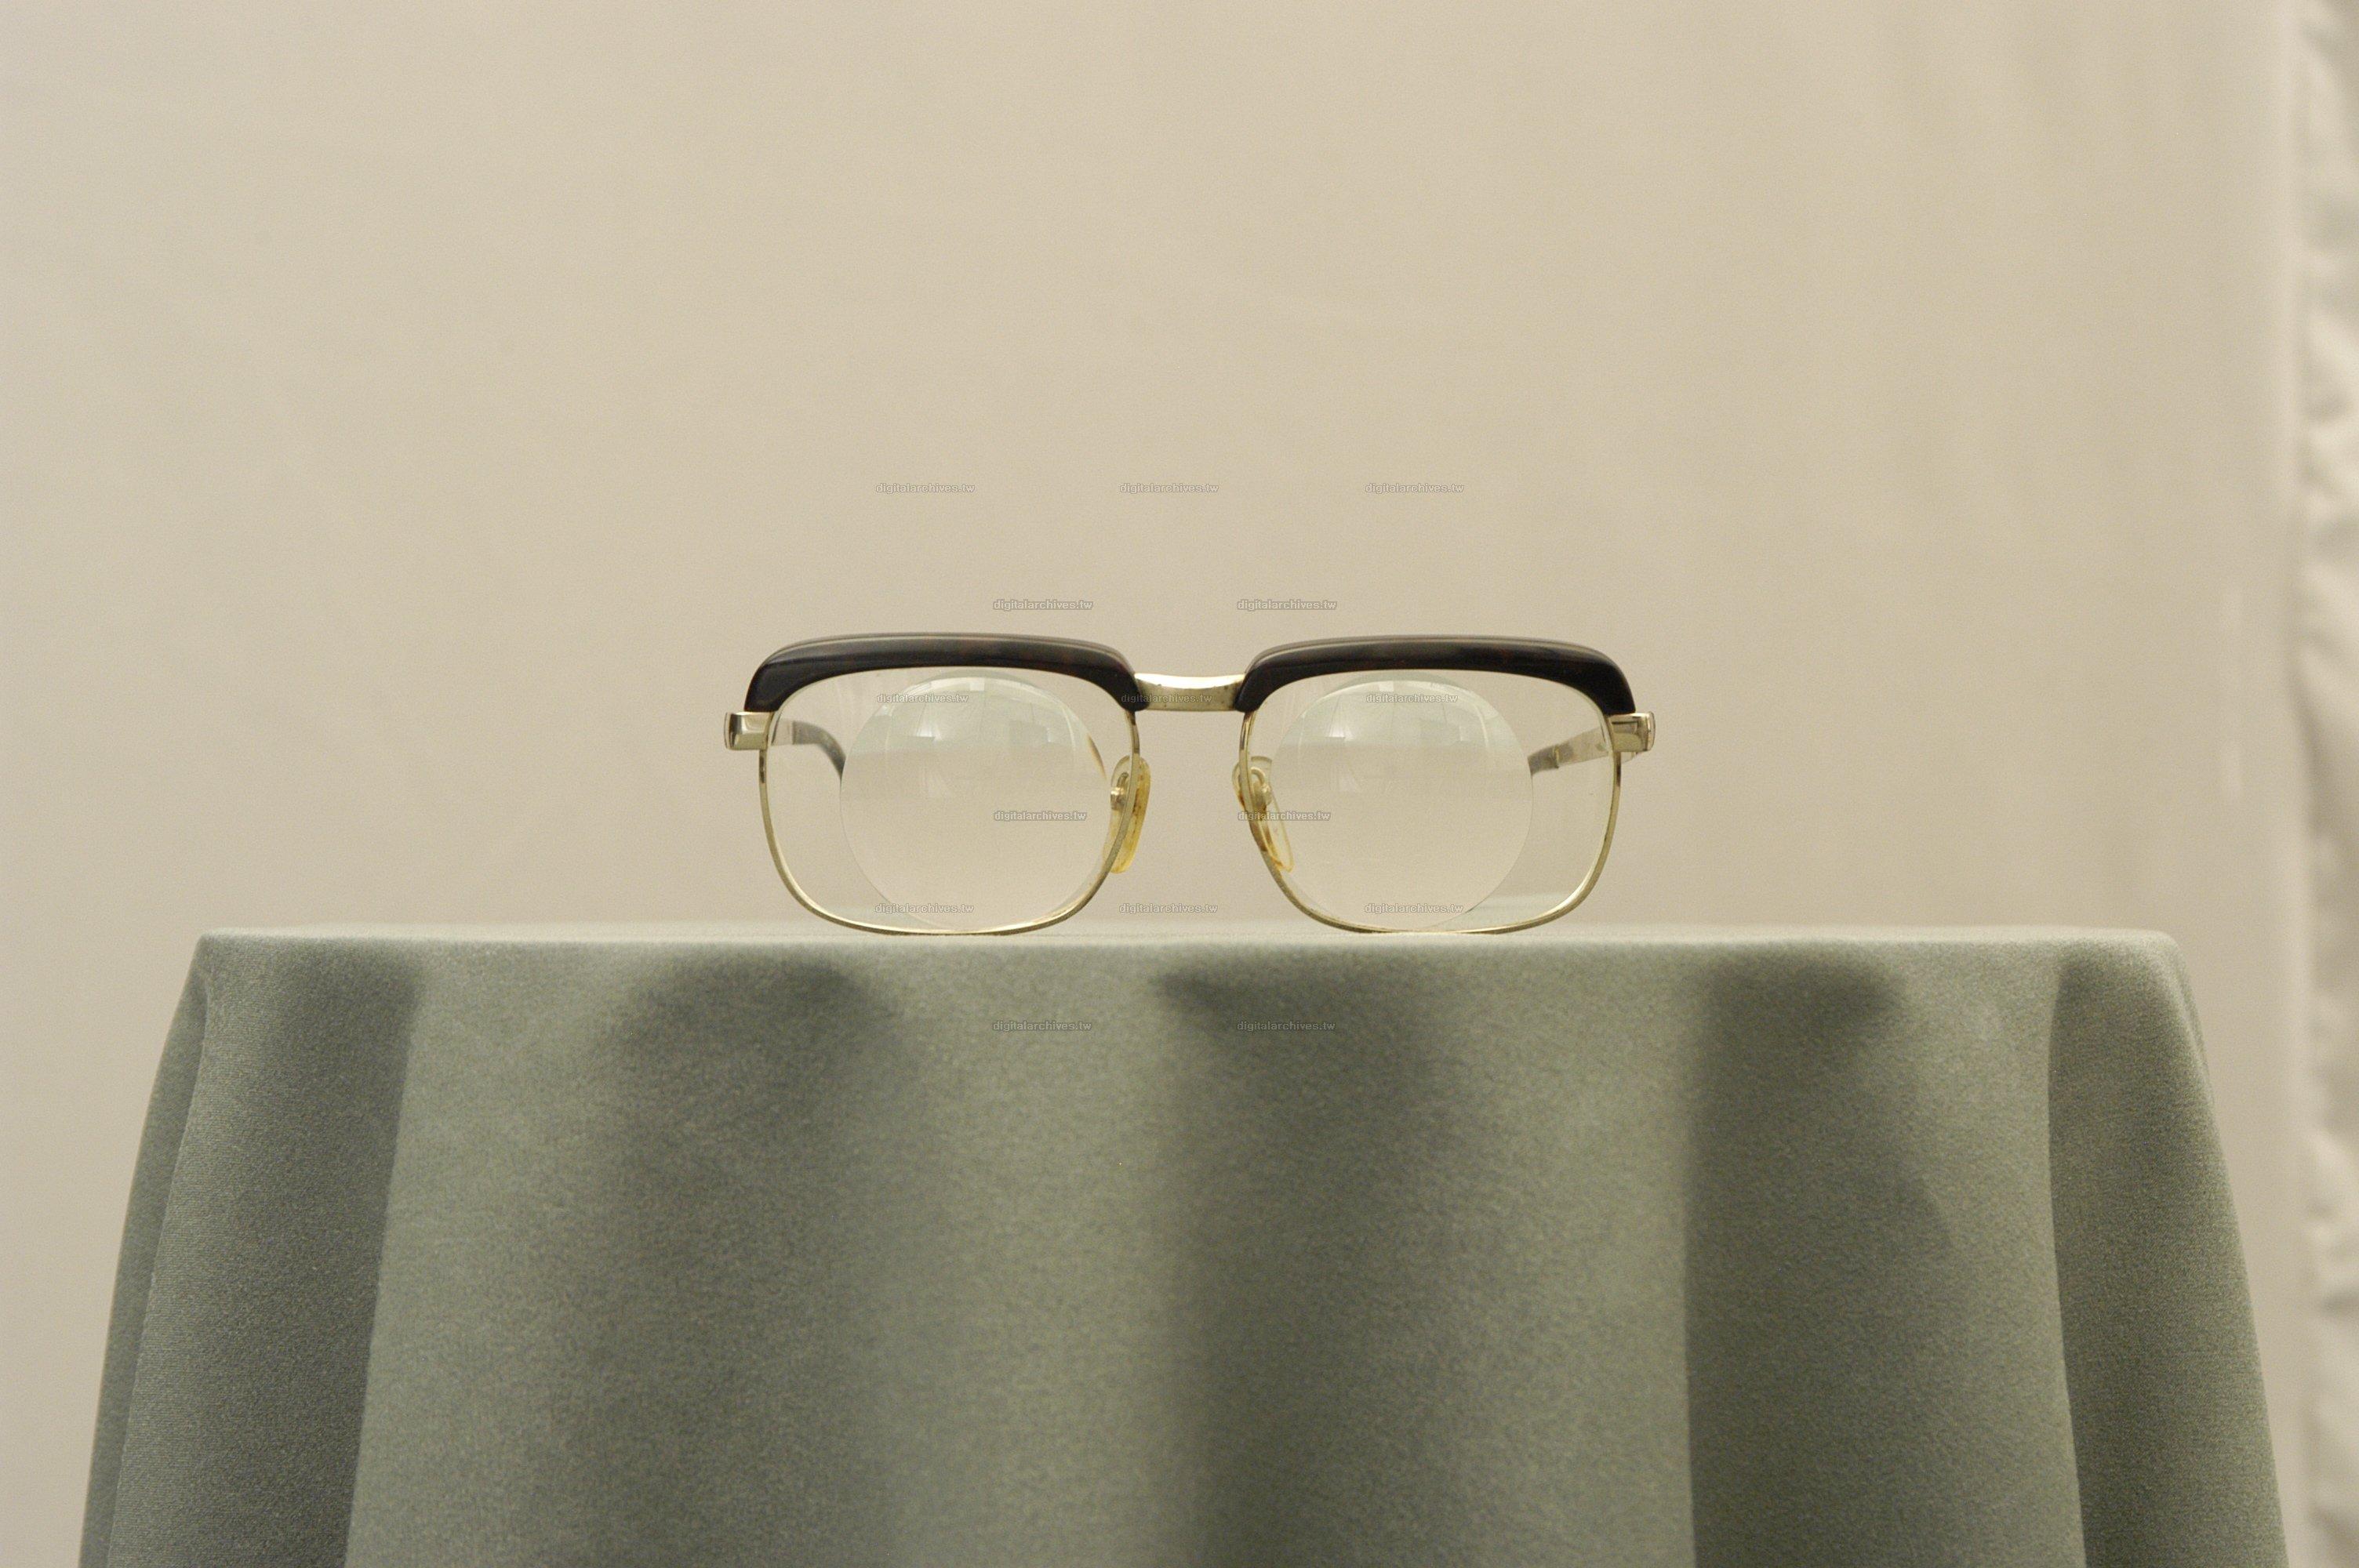 藏品名稱:老花眼鏡(入藏登錄號009000000009C-1)件名:老花眼鏡